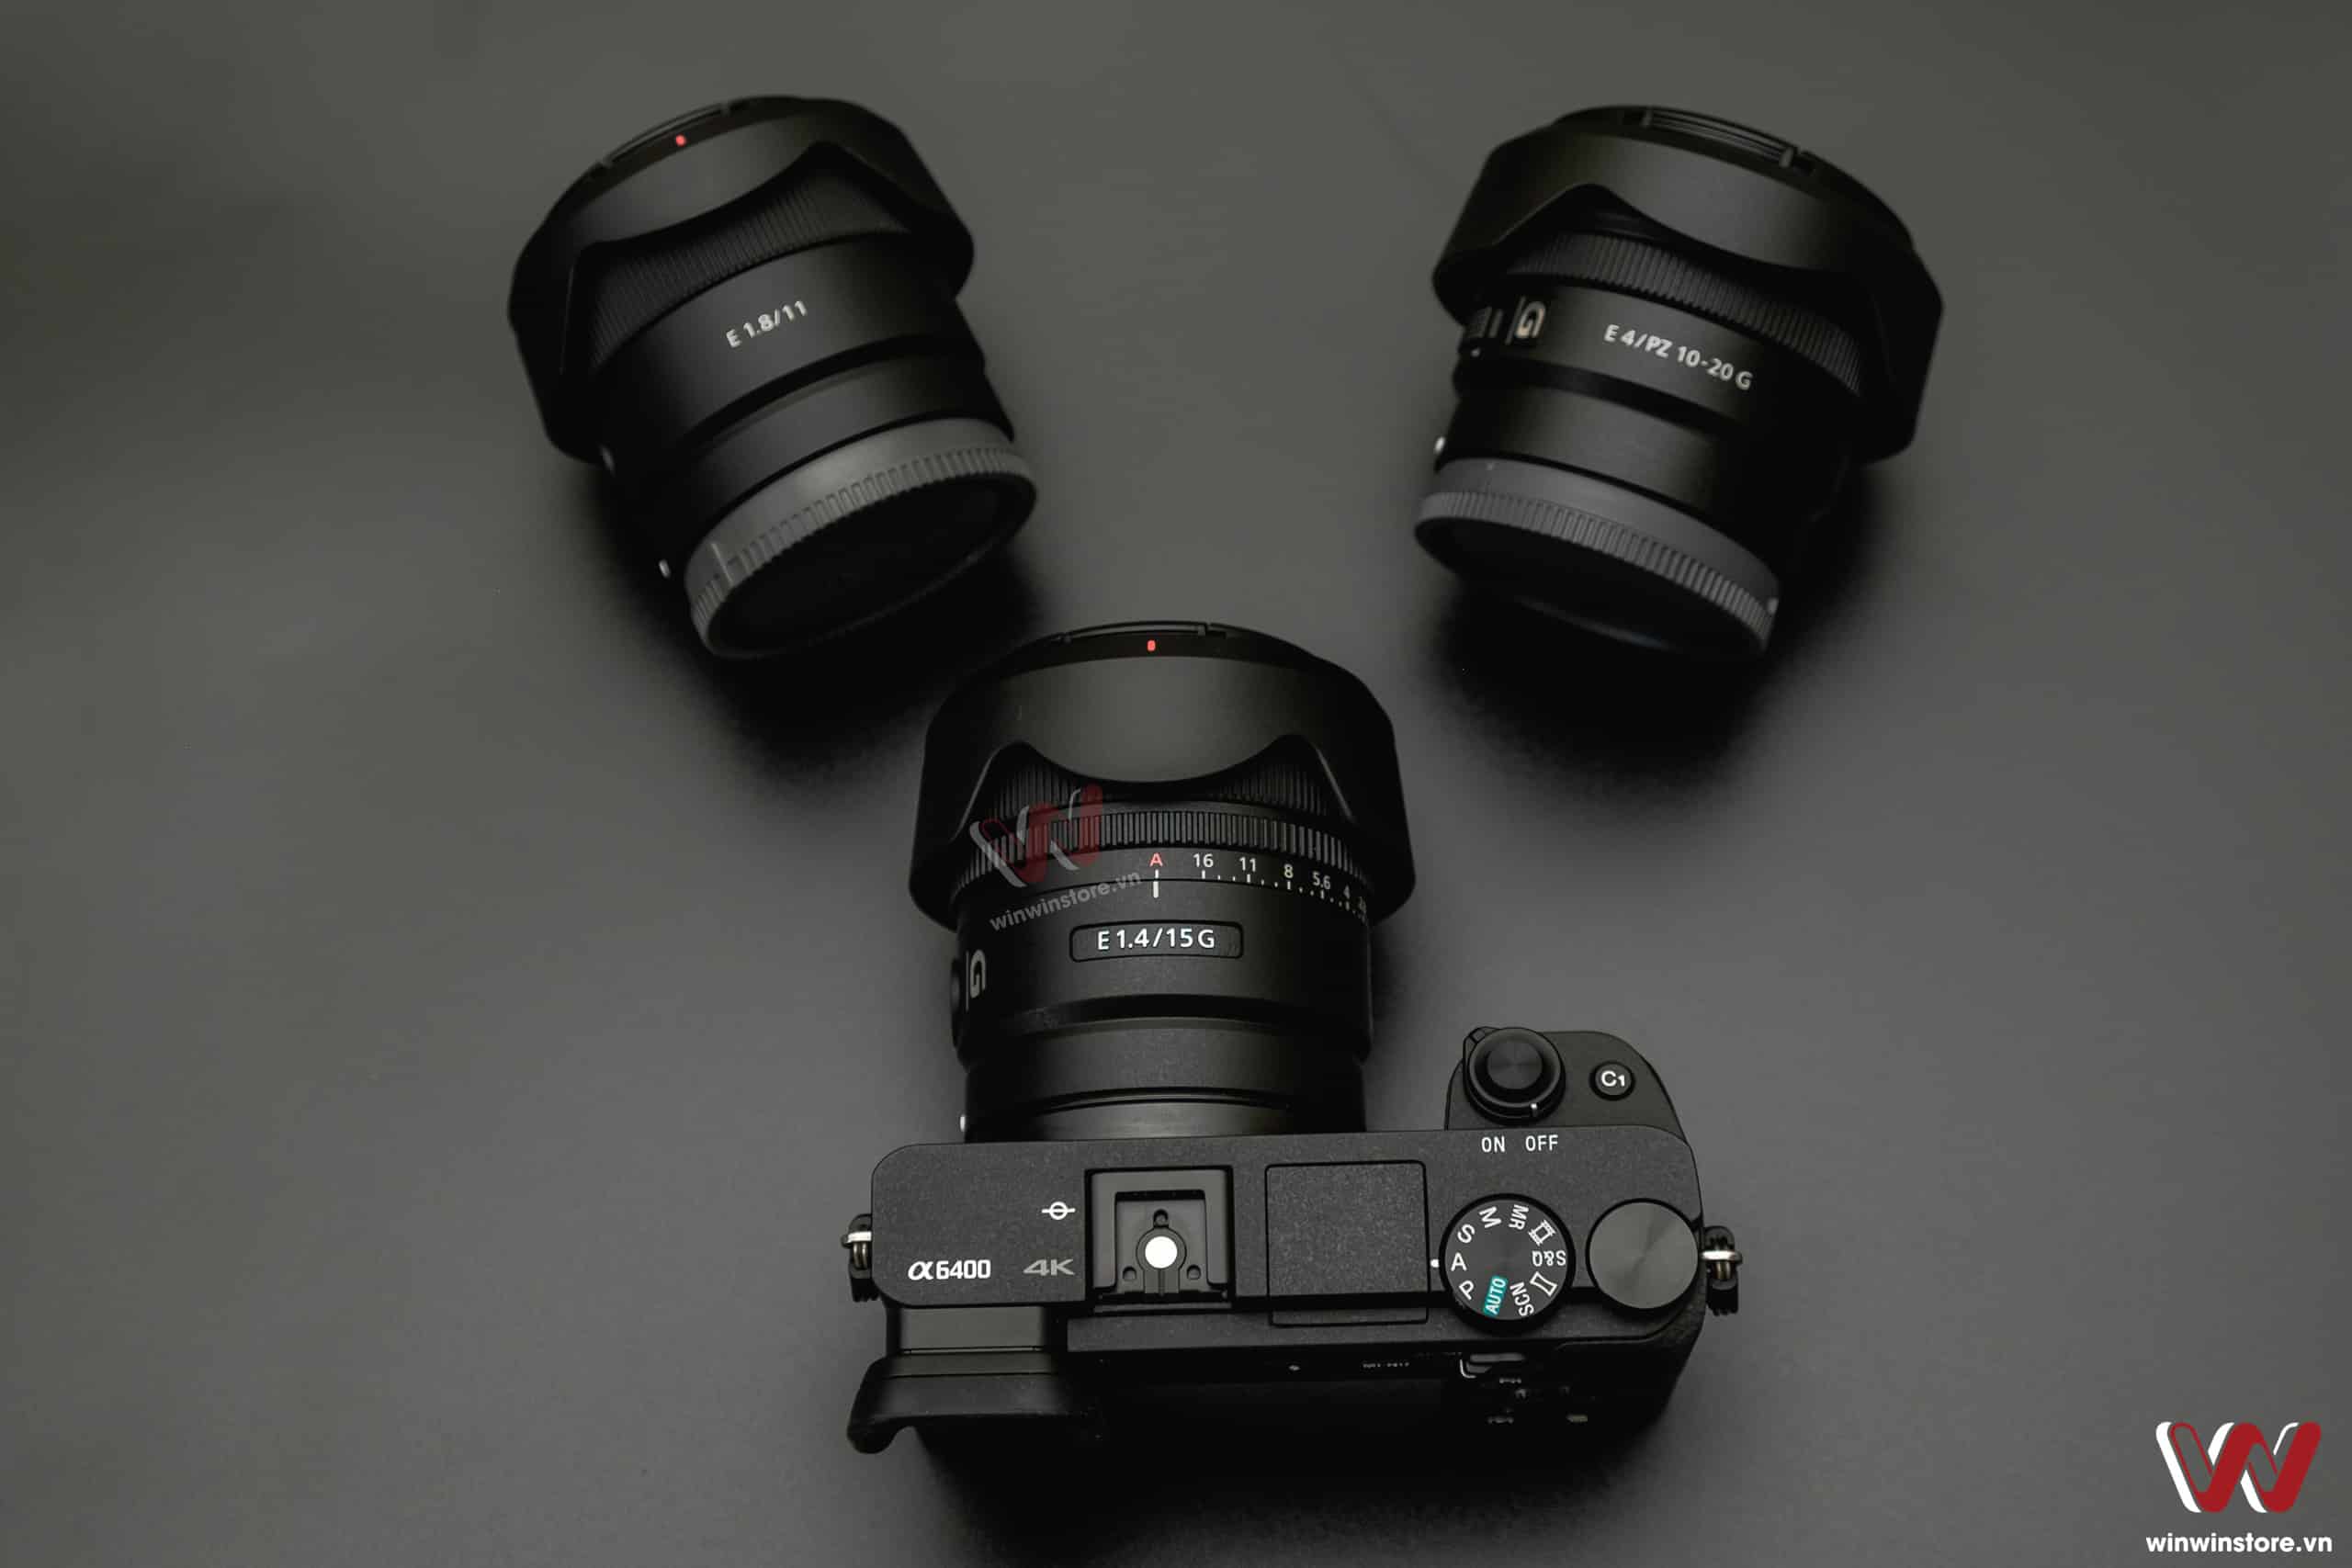 Mở bán bộ ba ống kính nhỏ gọn mới Sony cho máy ảnh APS-C